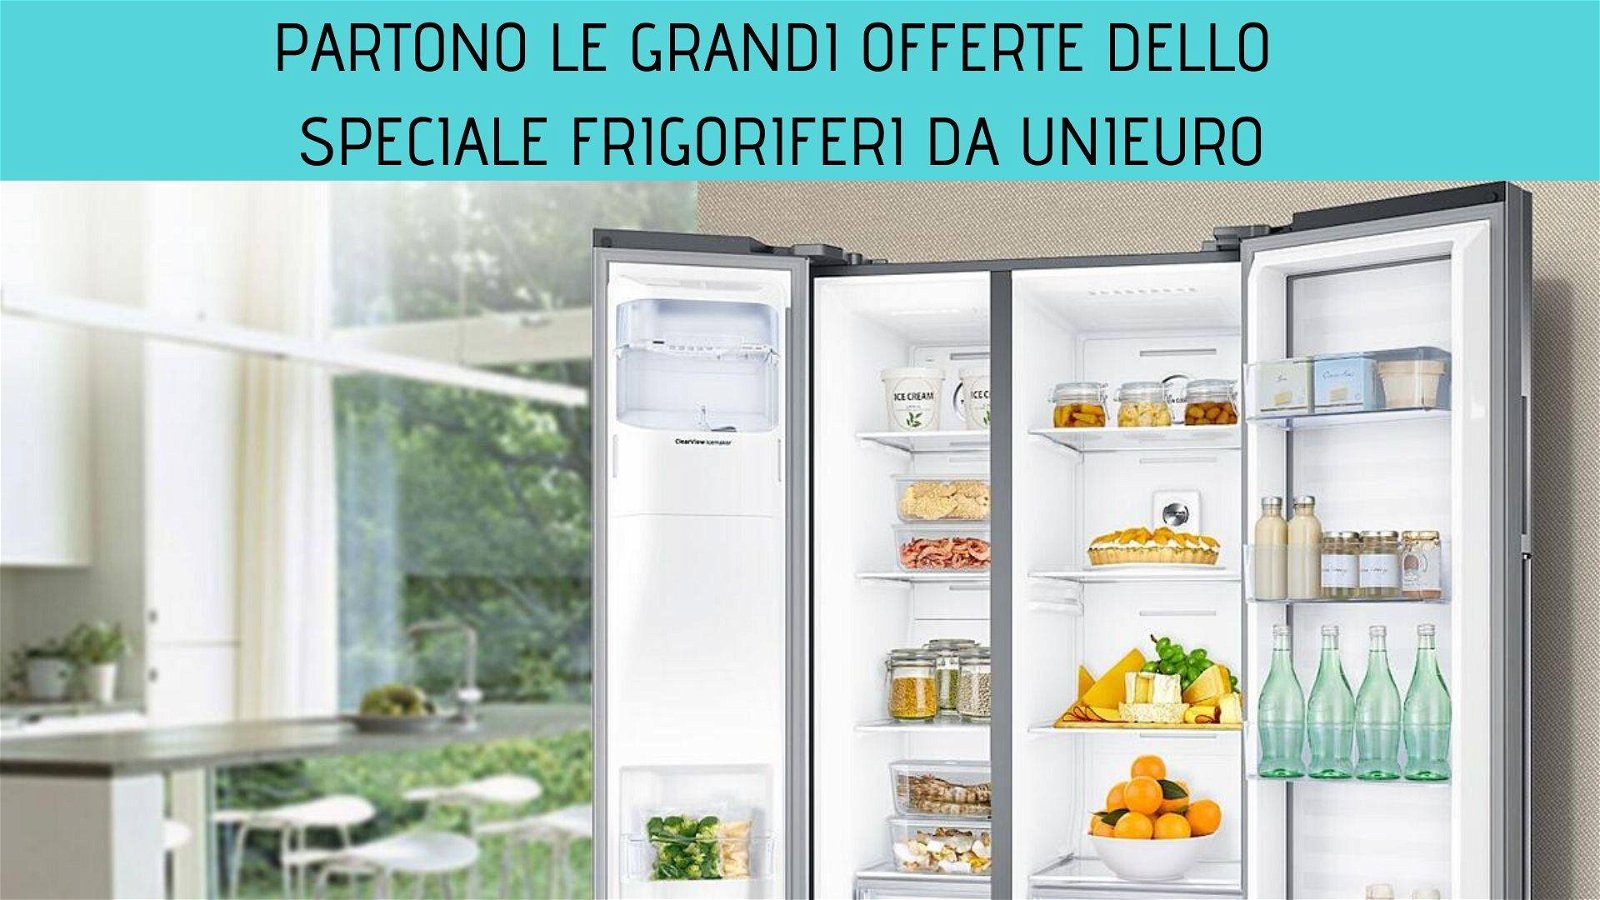 Immagine di Unieuro: partono le offerte dello speciale frigoriferi!